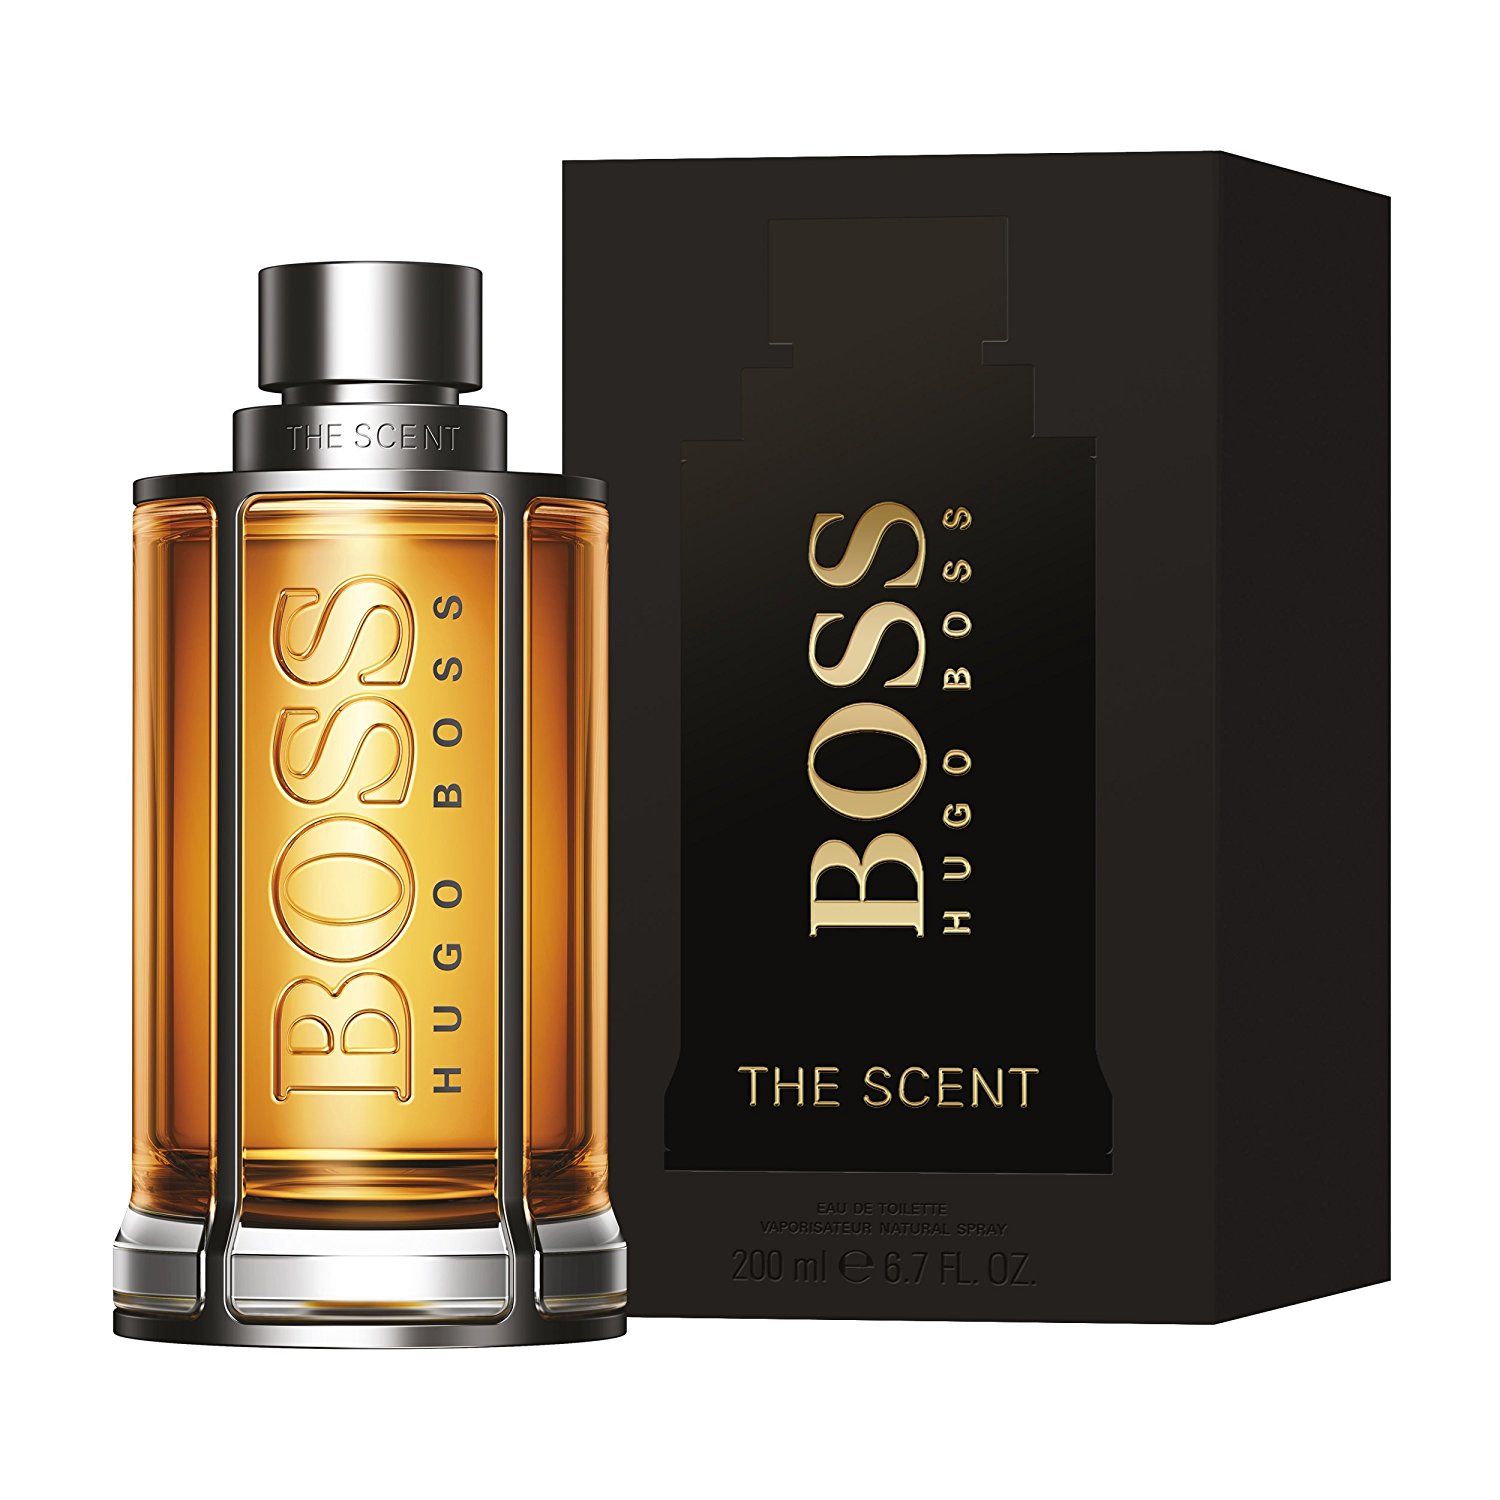 hugo boss men's new perfume